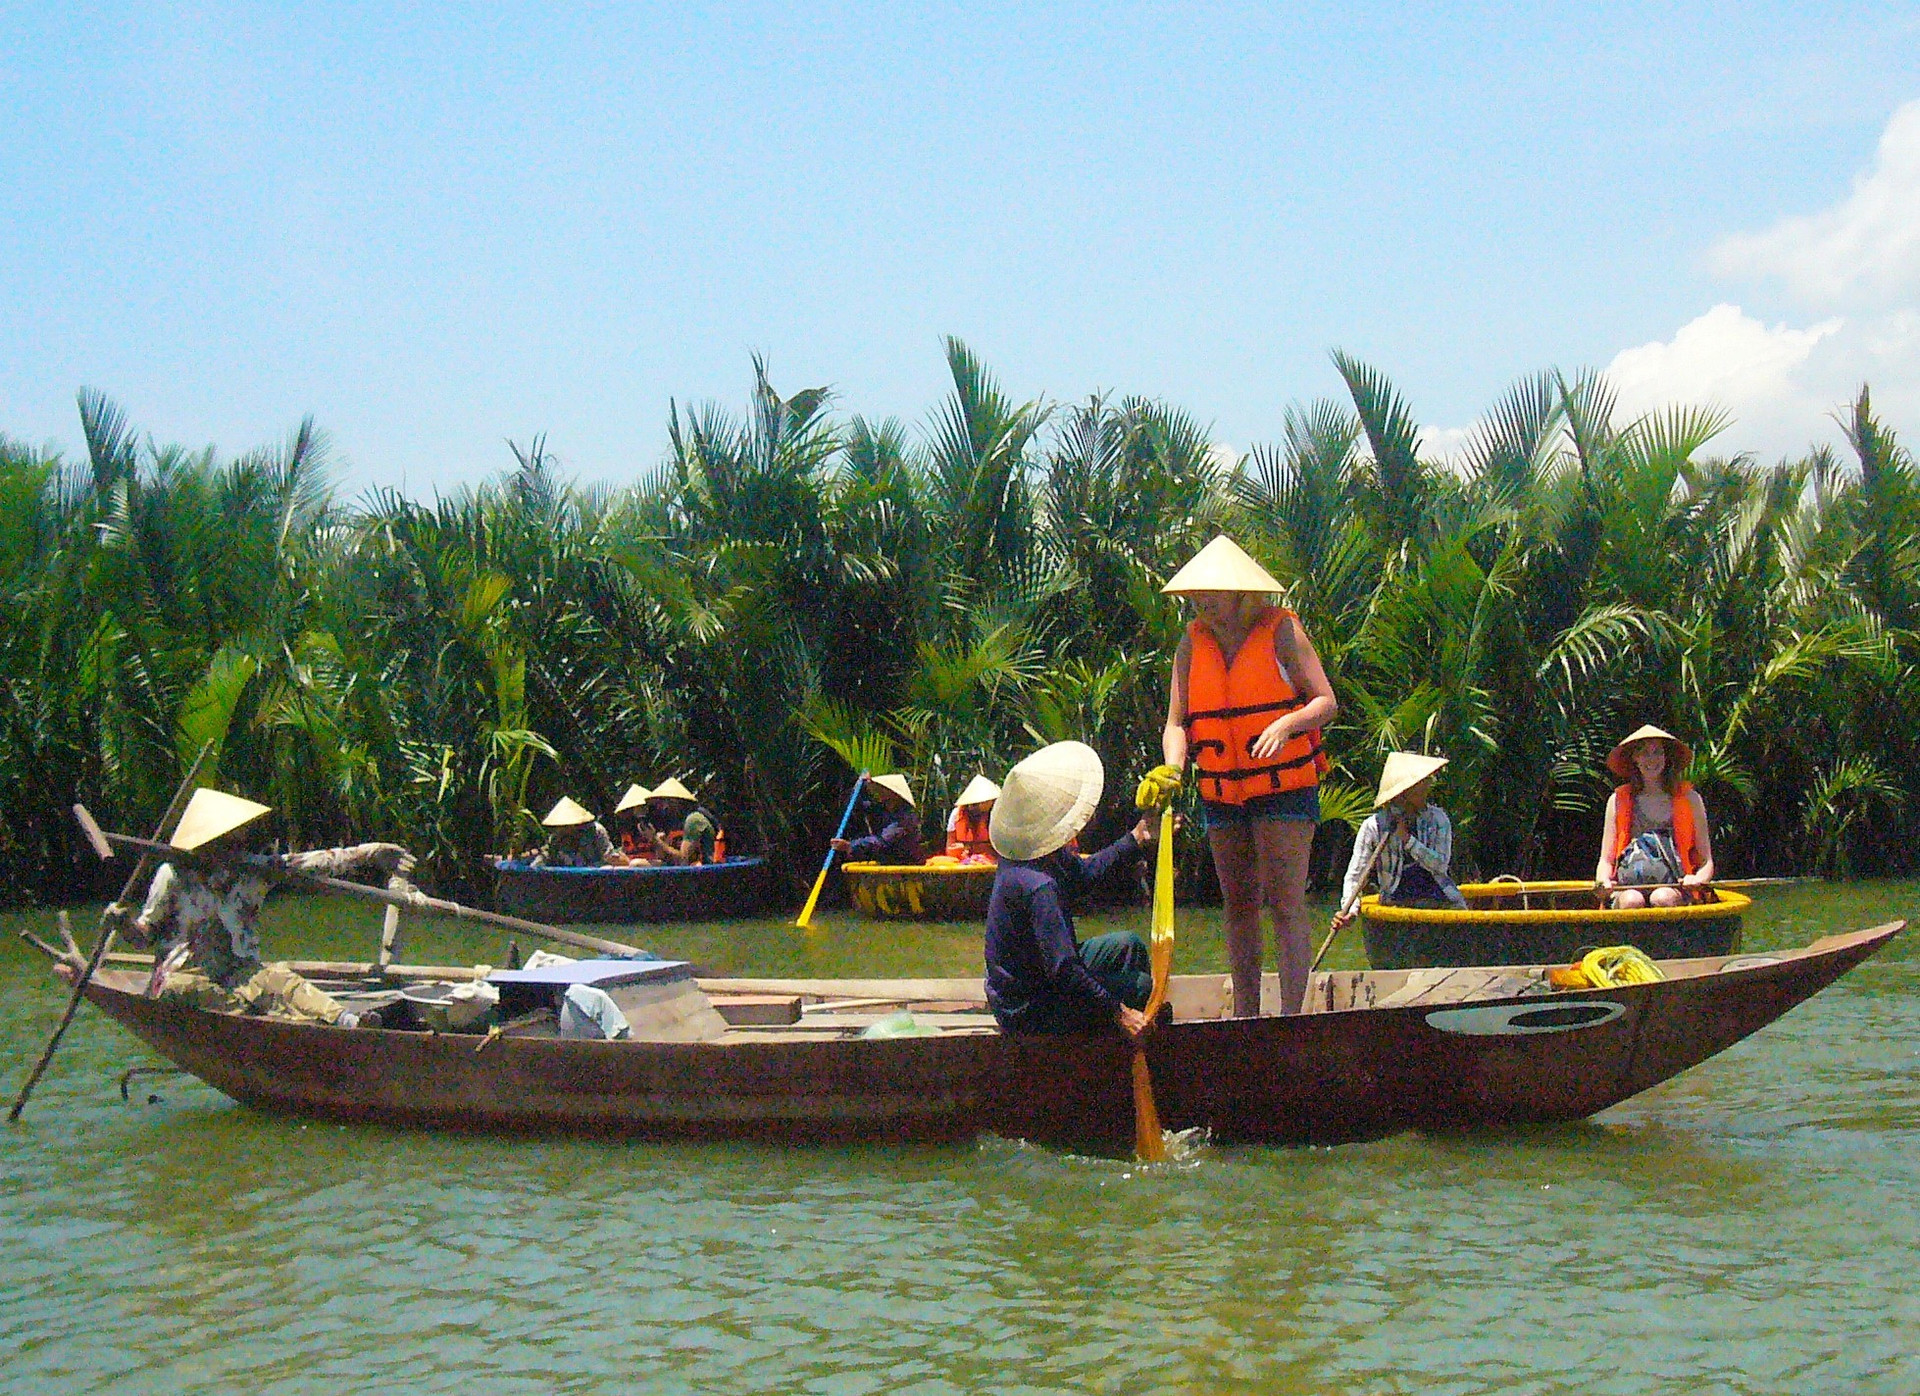 Du khách tham quan rừng dừa Bảy Mẫu và trải nghiệm đời sống người dân vùng sông nước Cẩm Thanh, TP.Hội An.